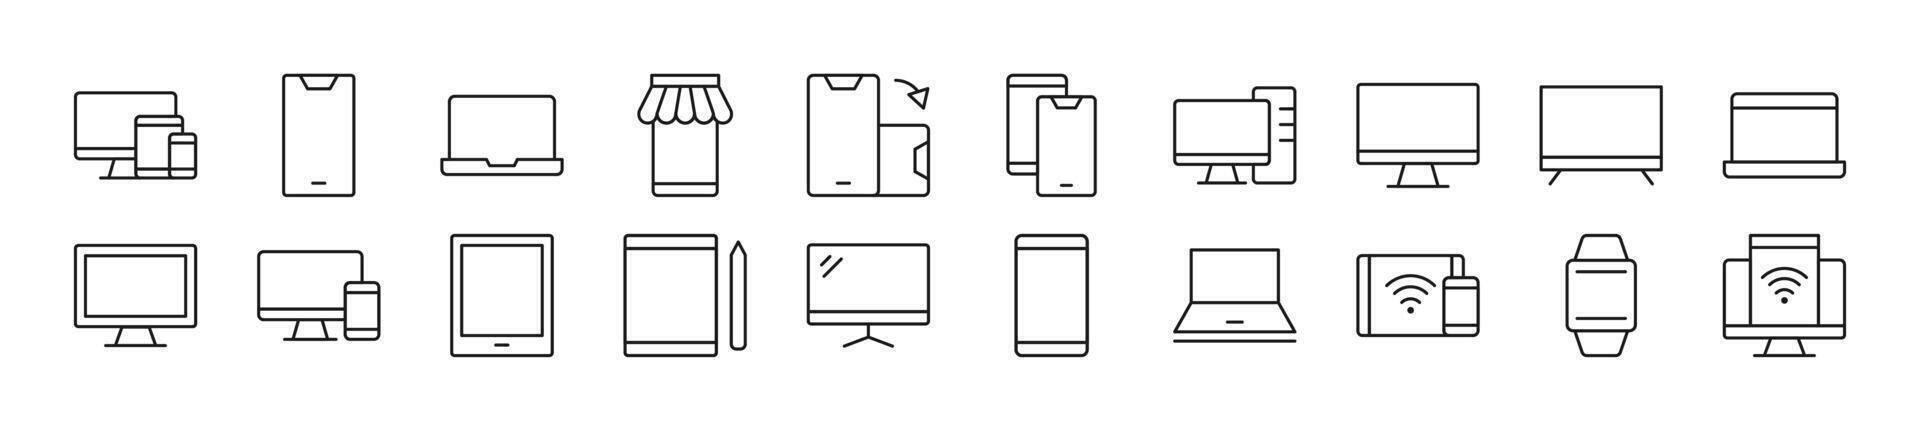 verzameling van schets symbool van computers, telefoons, laptops. bewerkbare hartinfarct. gemakkelijk lineair illustratie voor winkels, winkels, spandoeken, ontwerp vector